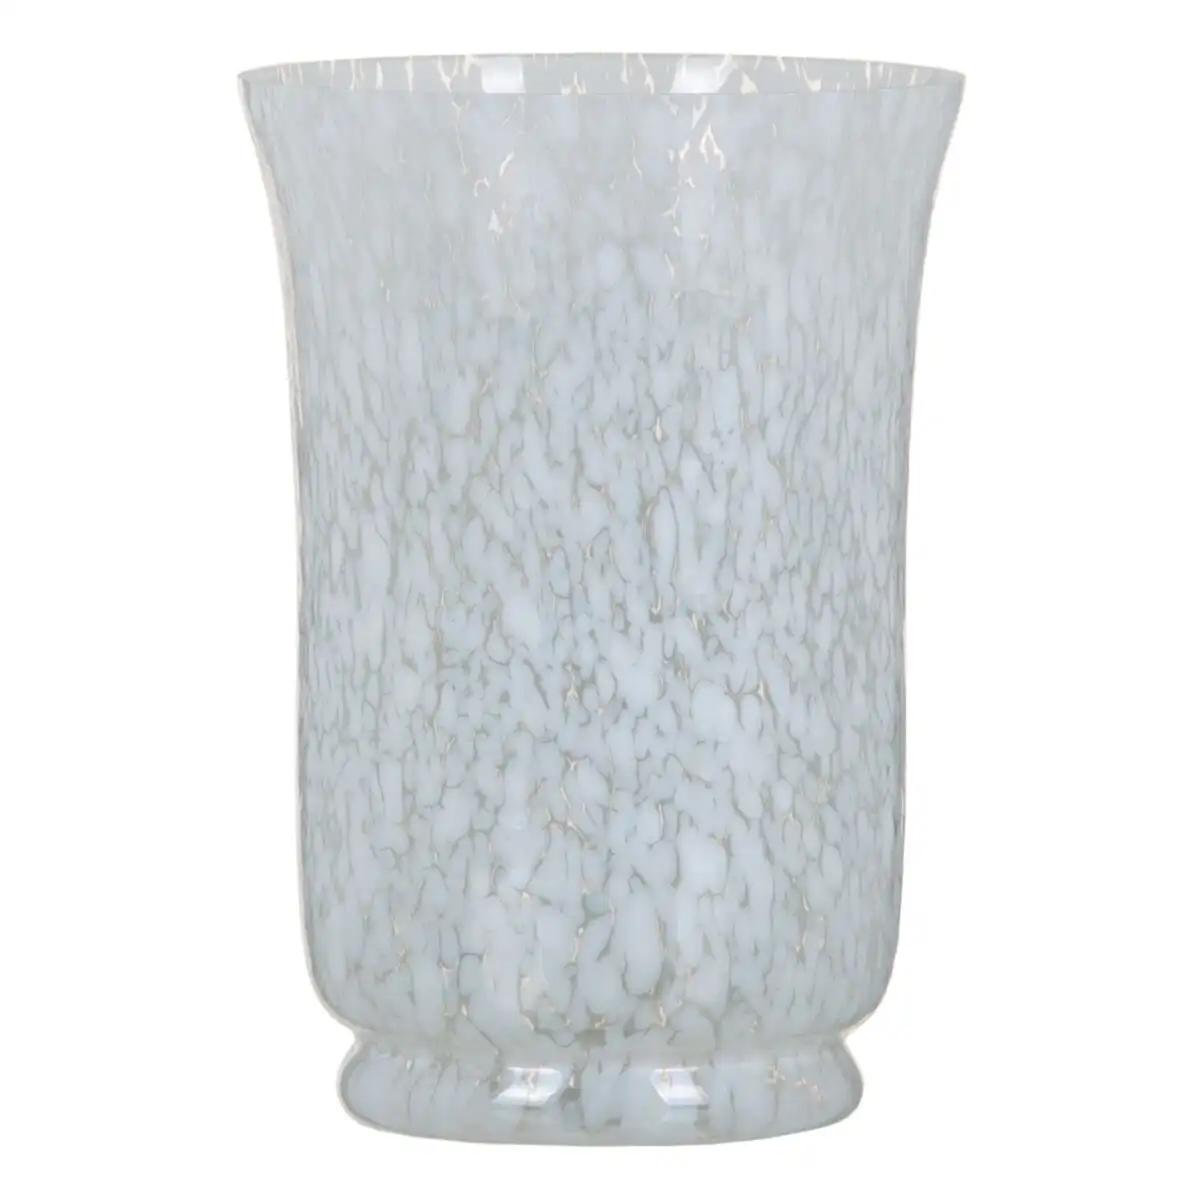 Vase cristal blanc 15 x 15 x 22 cm_1187. Entrez dans l'Univers de DIAYTAR SENEGAL - Où la Tradition S'unit à la Modernité. Explorez notre sélection pour trouver des produits qui allient héritage et innovation.